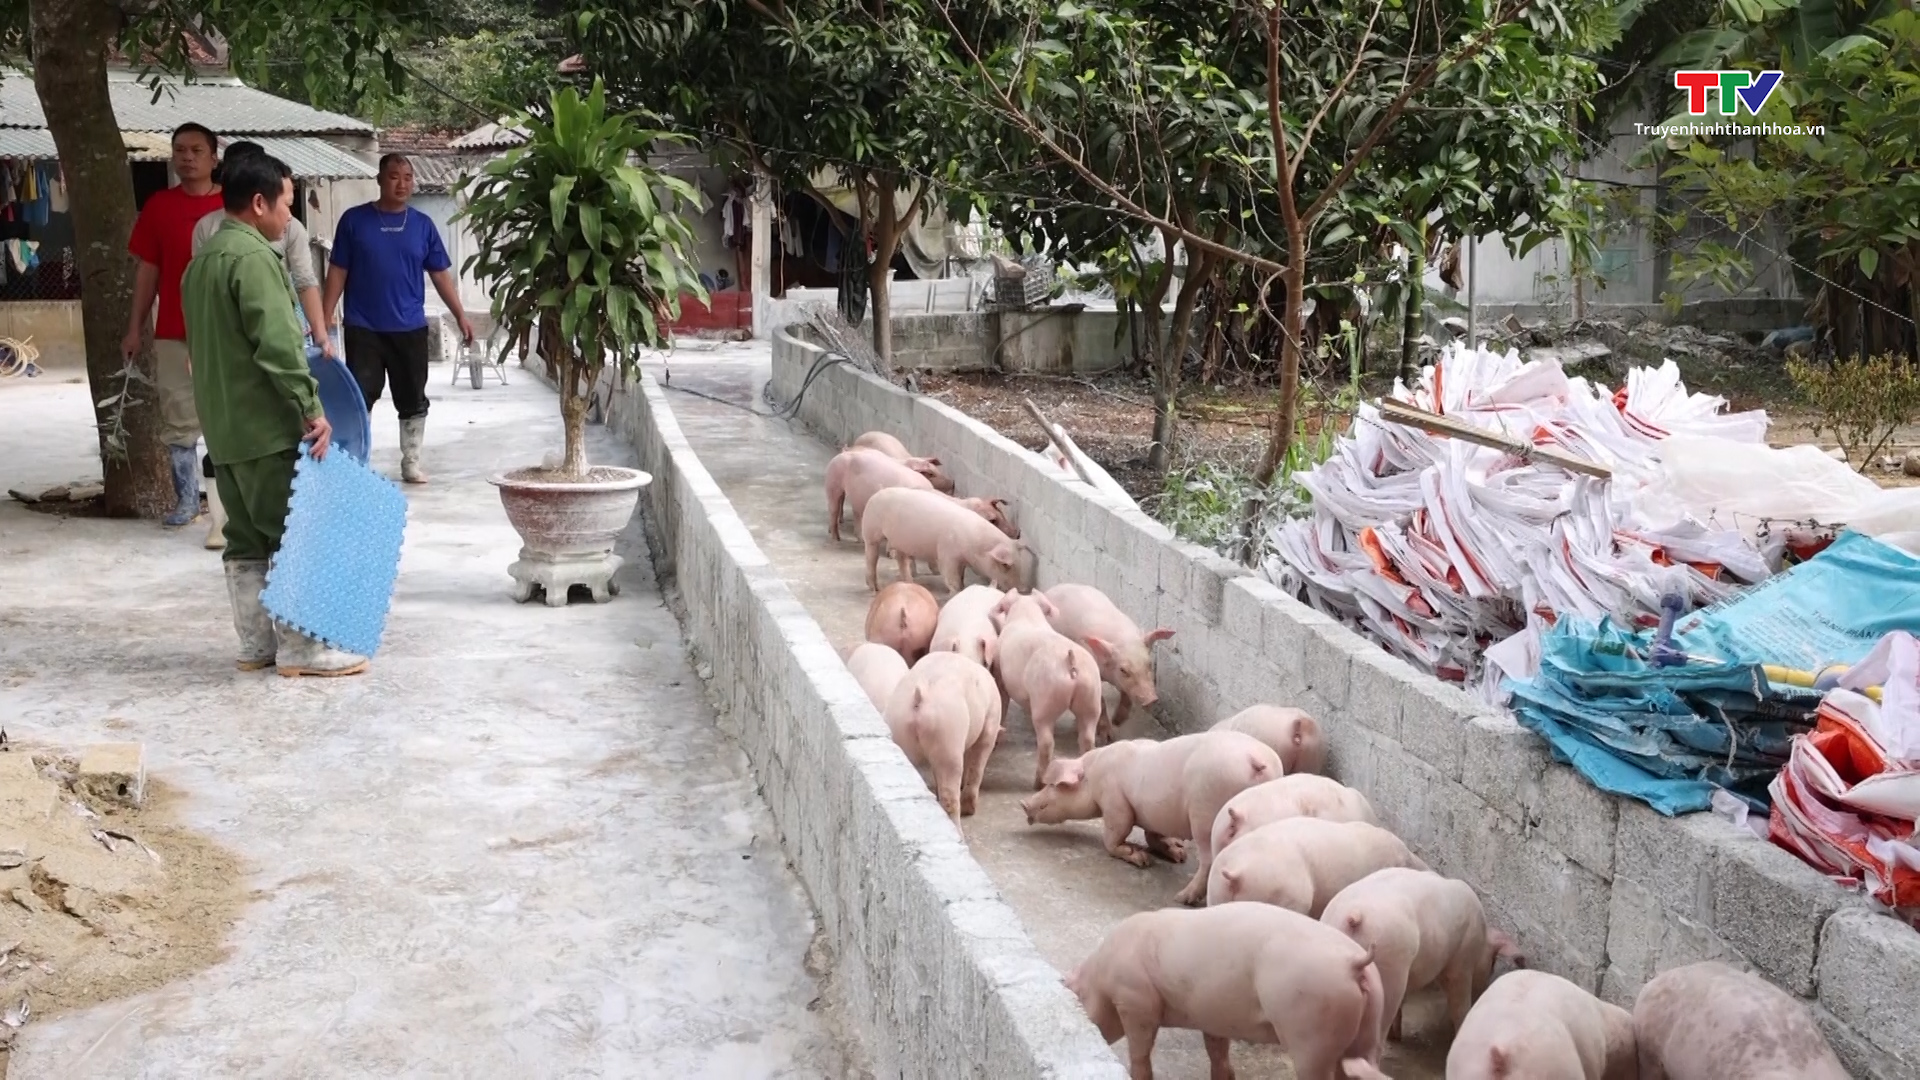 Chăn nuôi lợn theo tiêu chuẩn VietGAP, đảm bảo an toàn dịch bệnh- Ảnh 2.